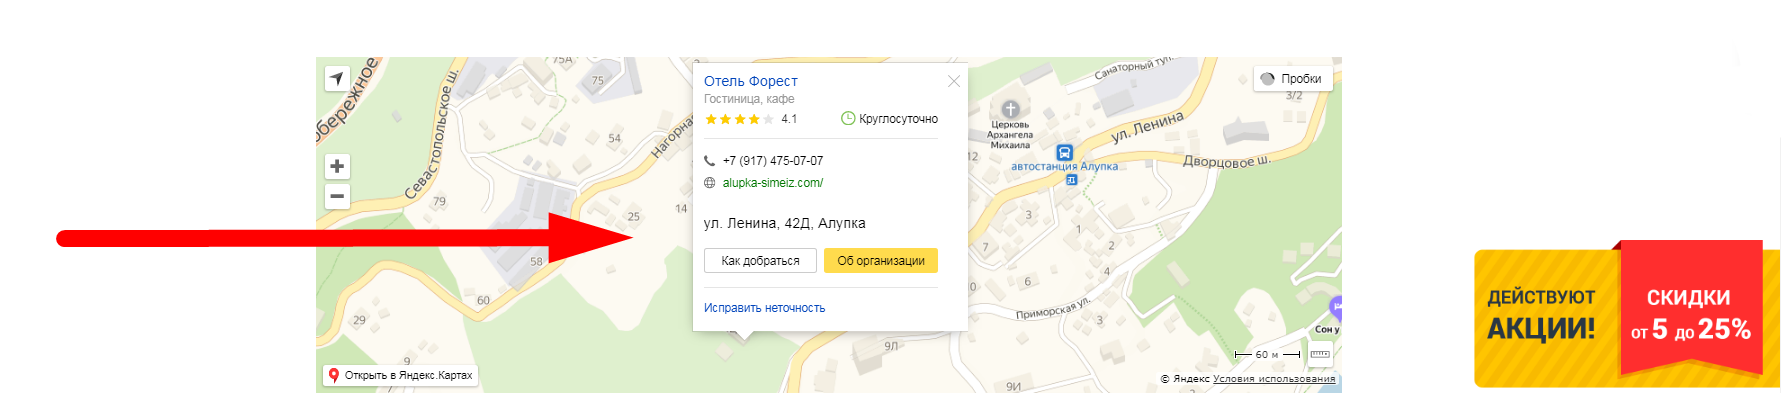 картка організації в Яндекс-довіднику